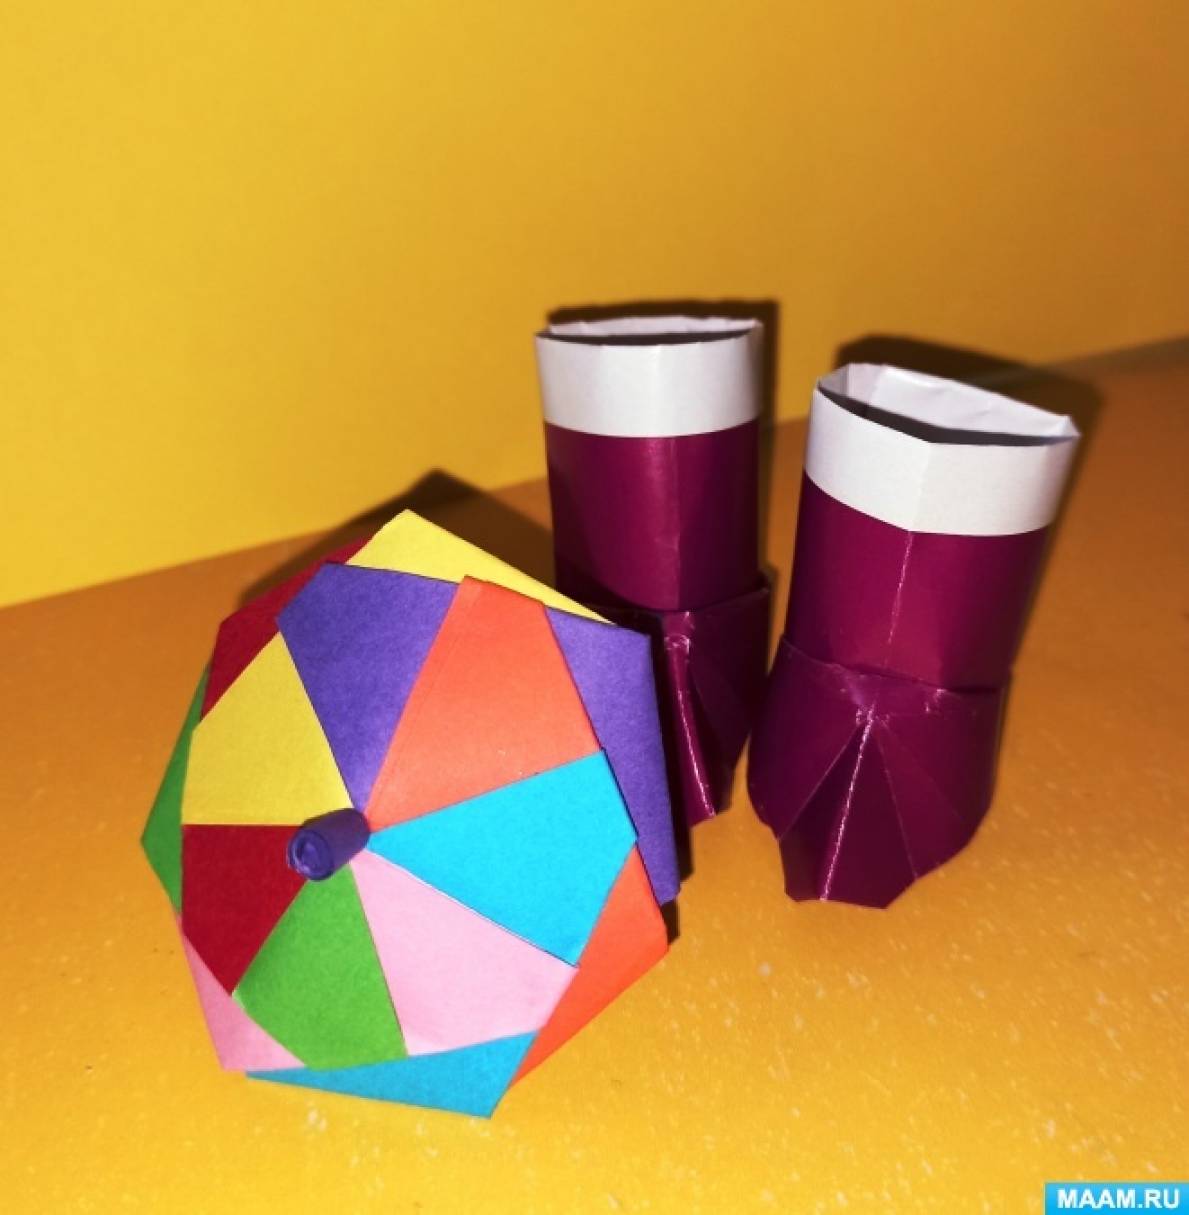 Как сделать Зонтик из бумаги А4 - ОТКРЫВАЕТСЯ и ЗАКРЫВАЕТСЯ. Оригами из бум�аги. Origami